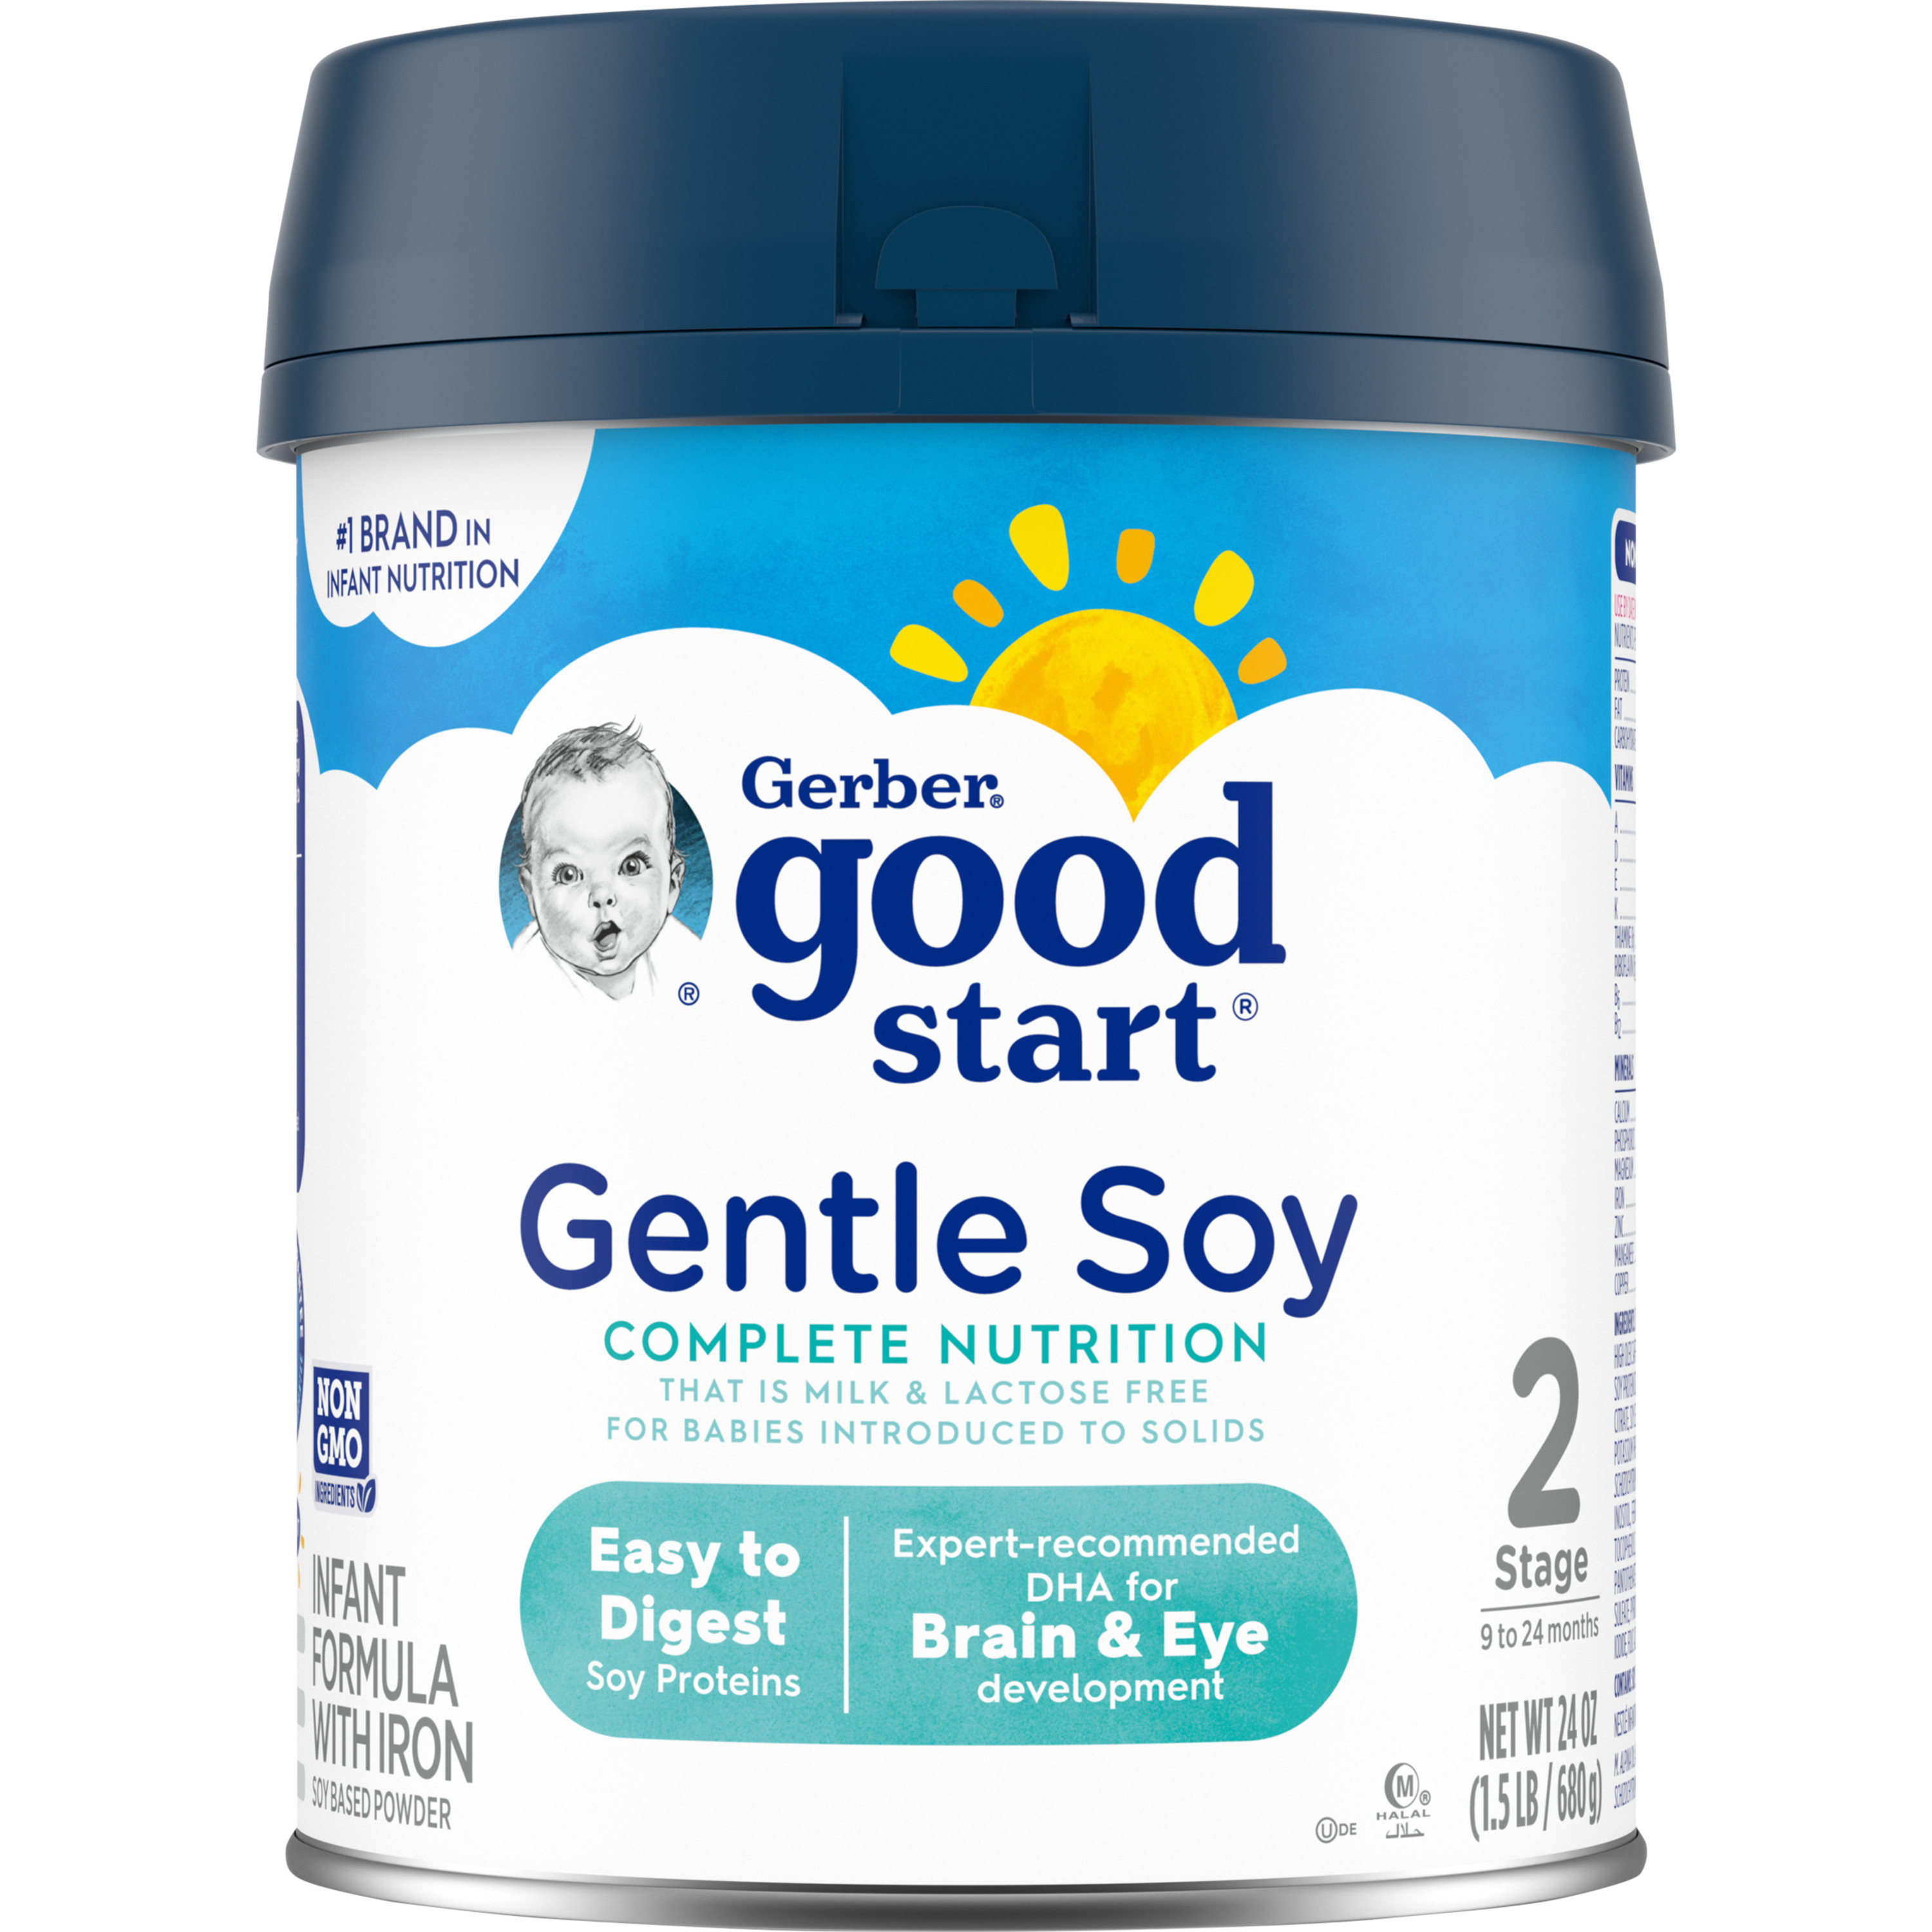 Gerber Good Start Gentle Soy Powder Infant and Toddler Formula, 24 oz Canister - image 1 of 8